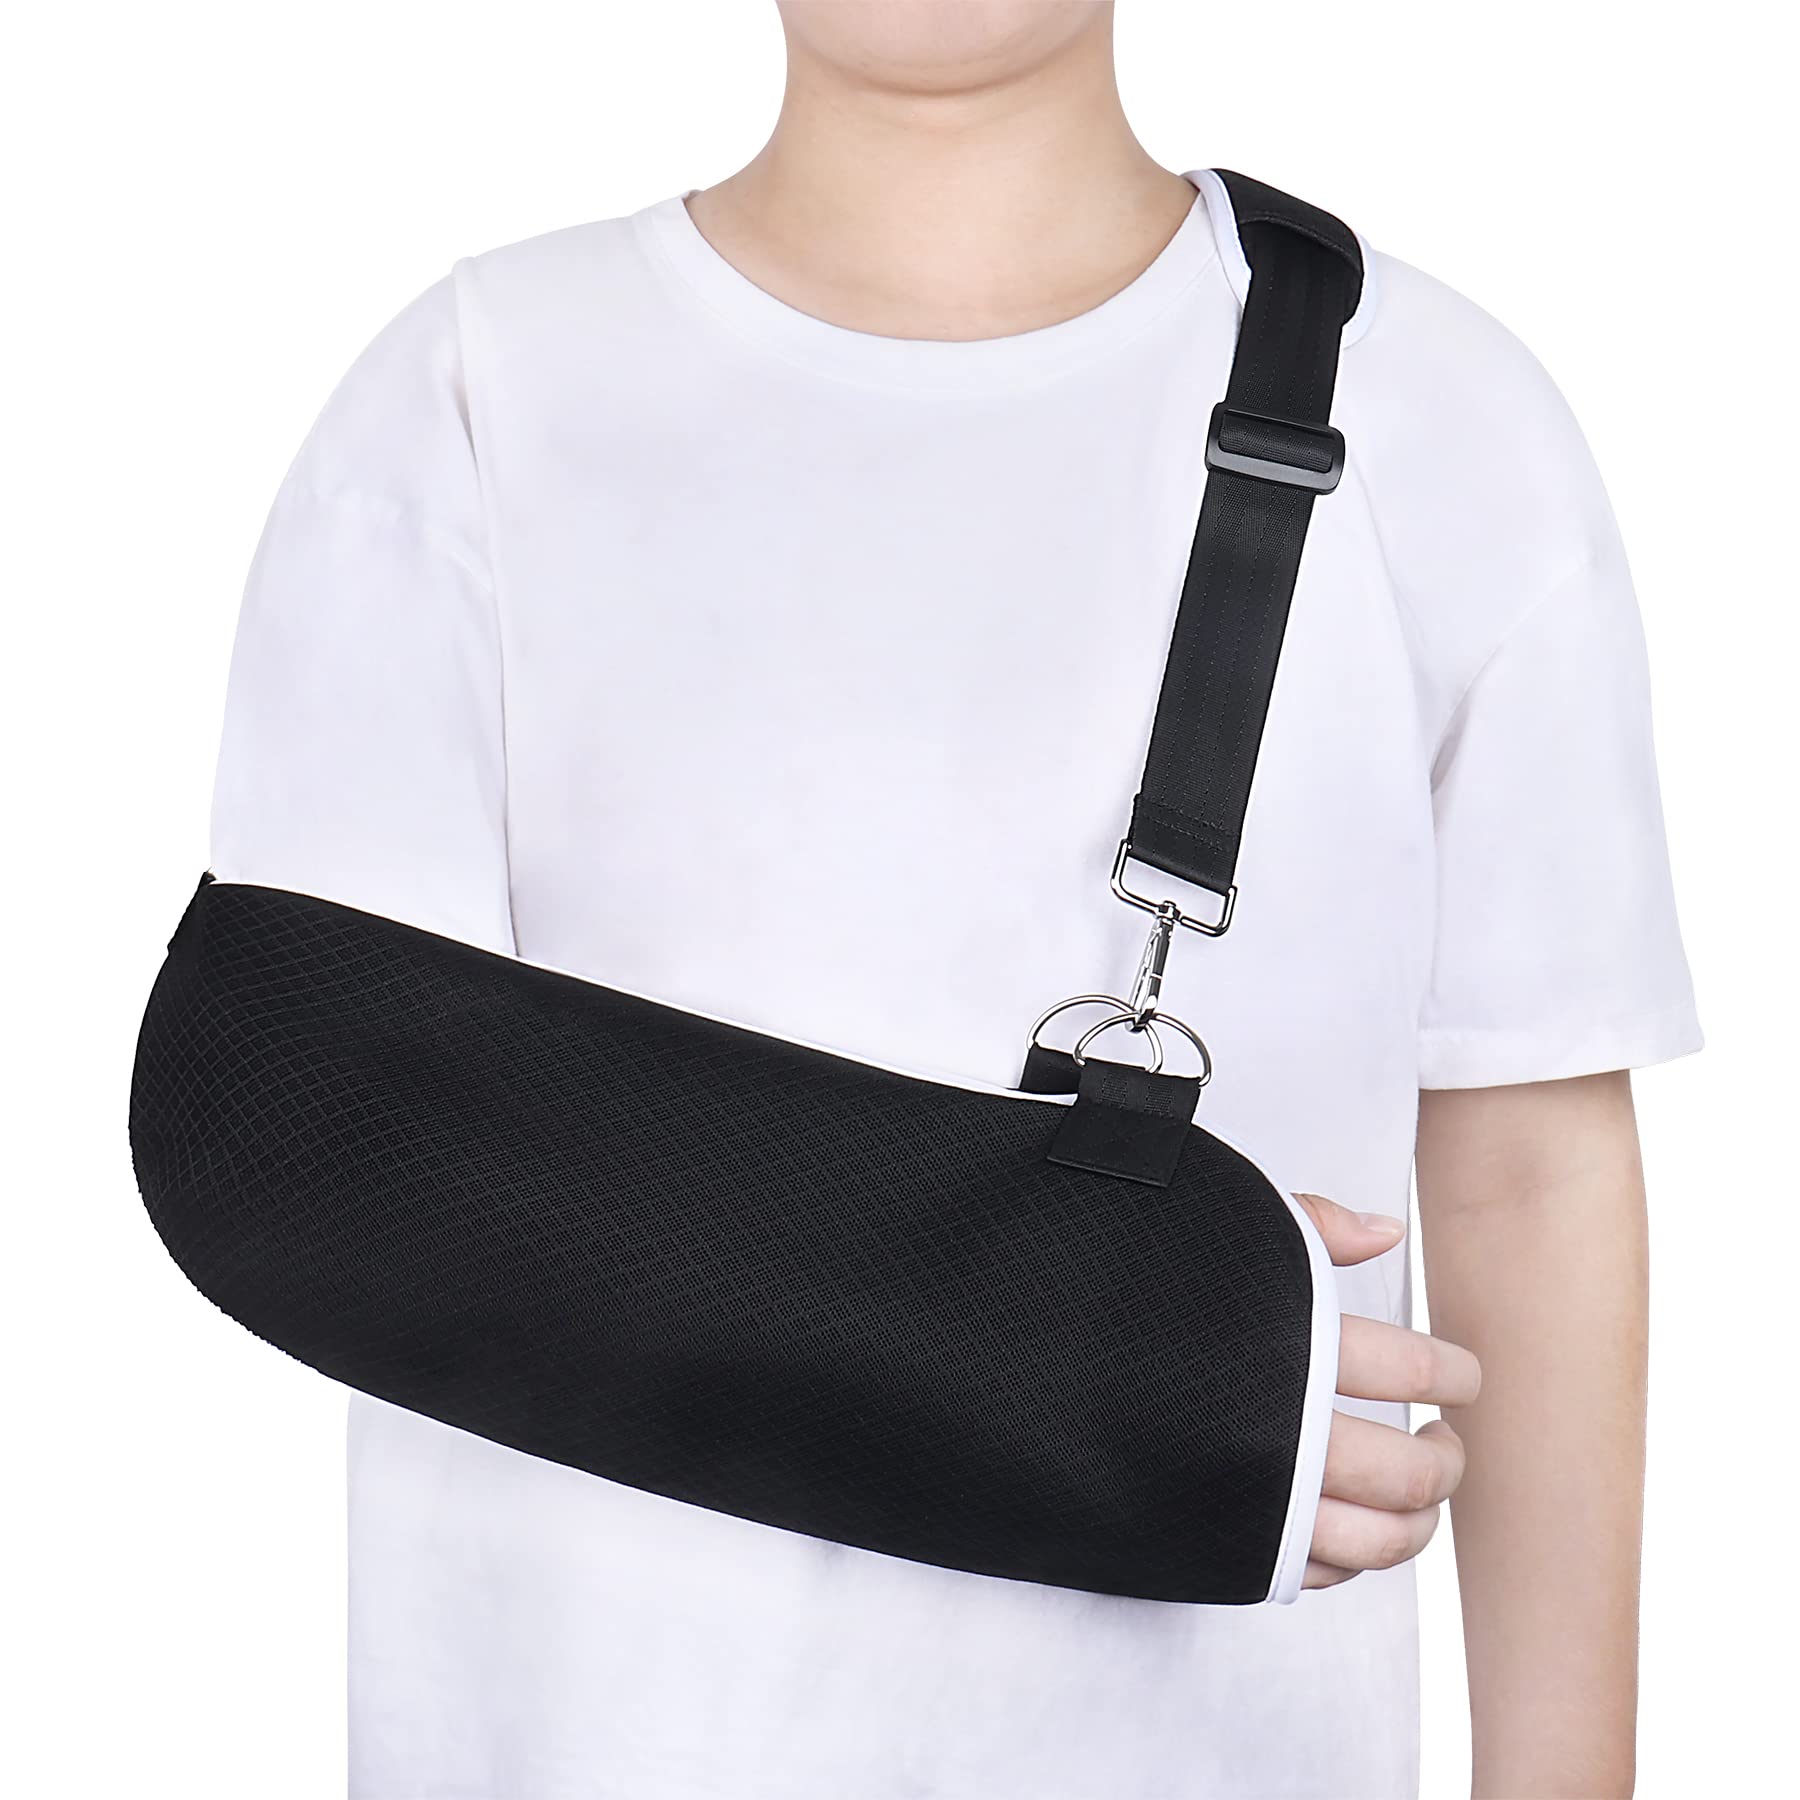 medical foam arm sling shoulder immobilizer